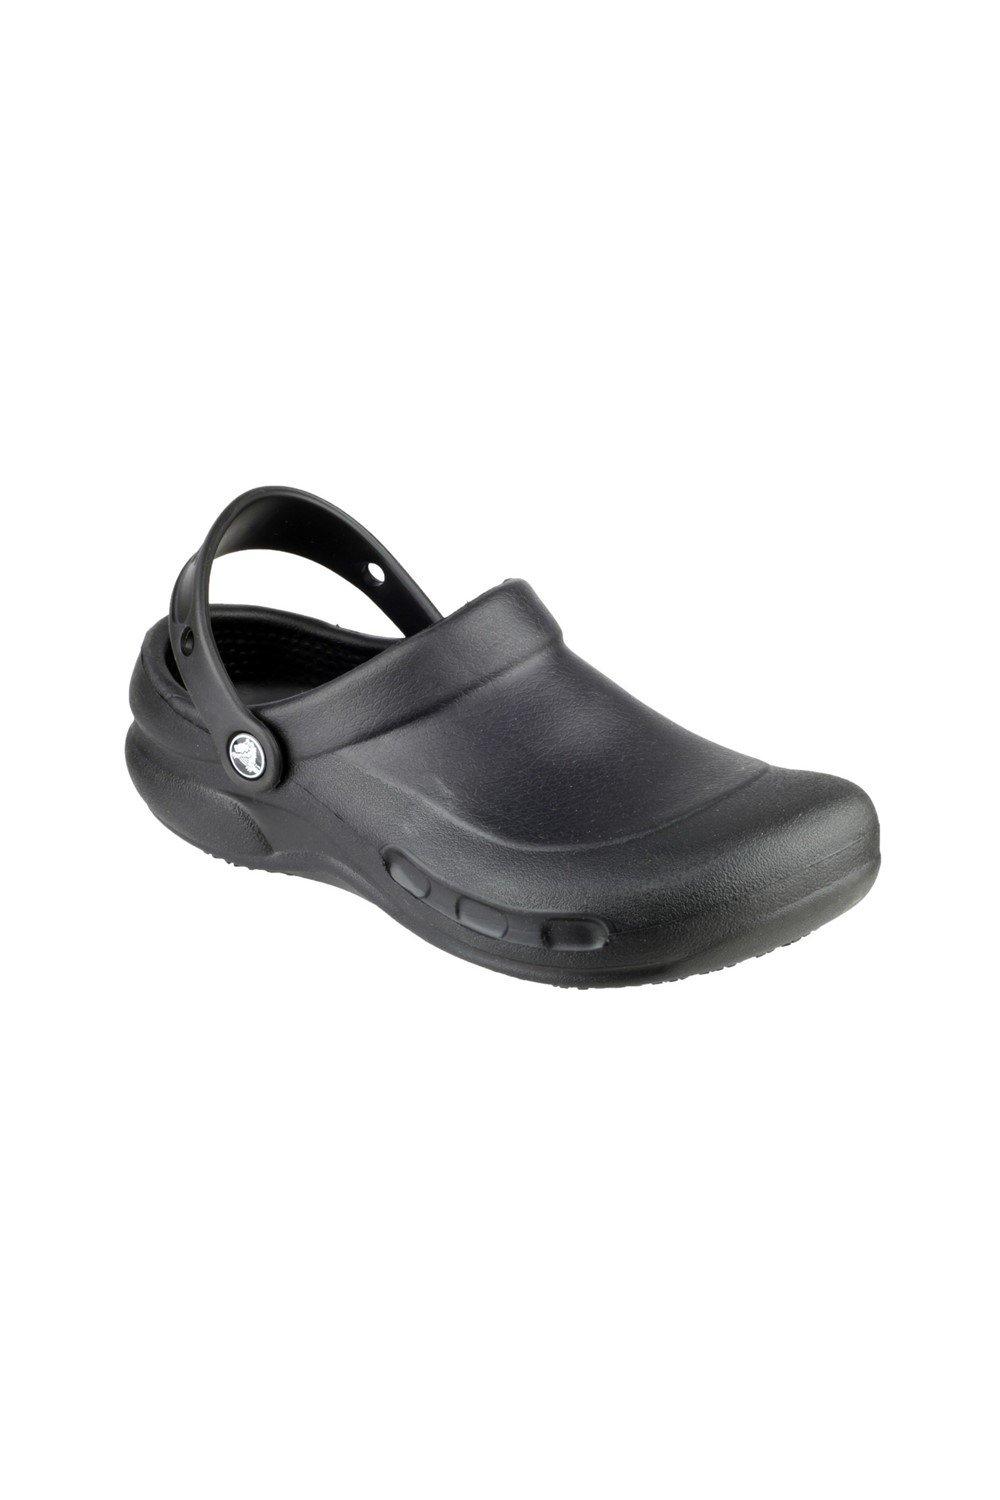 Туфли-слипоны из термопластика Бистро Crocs, черный